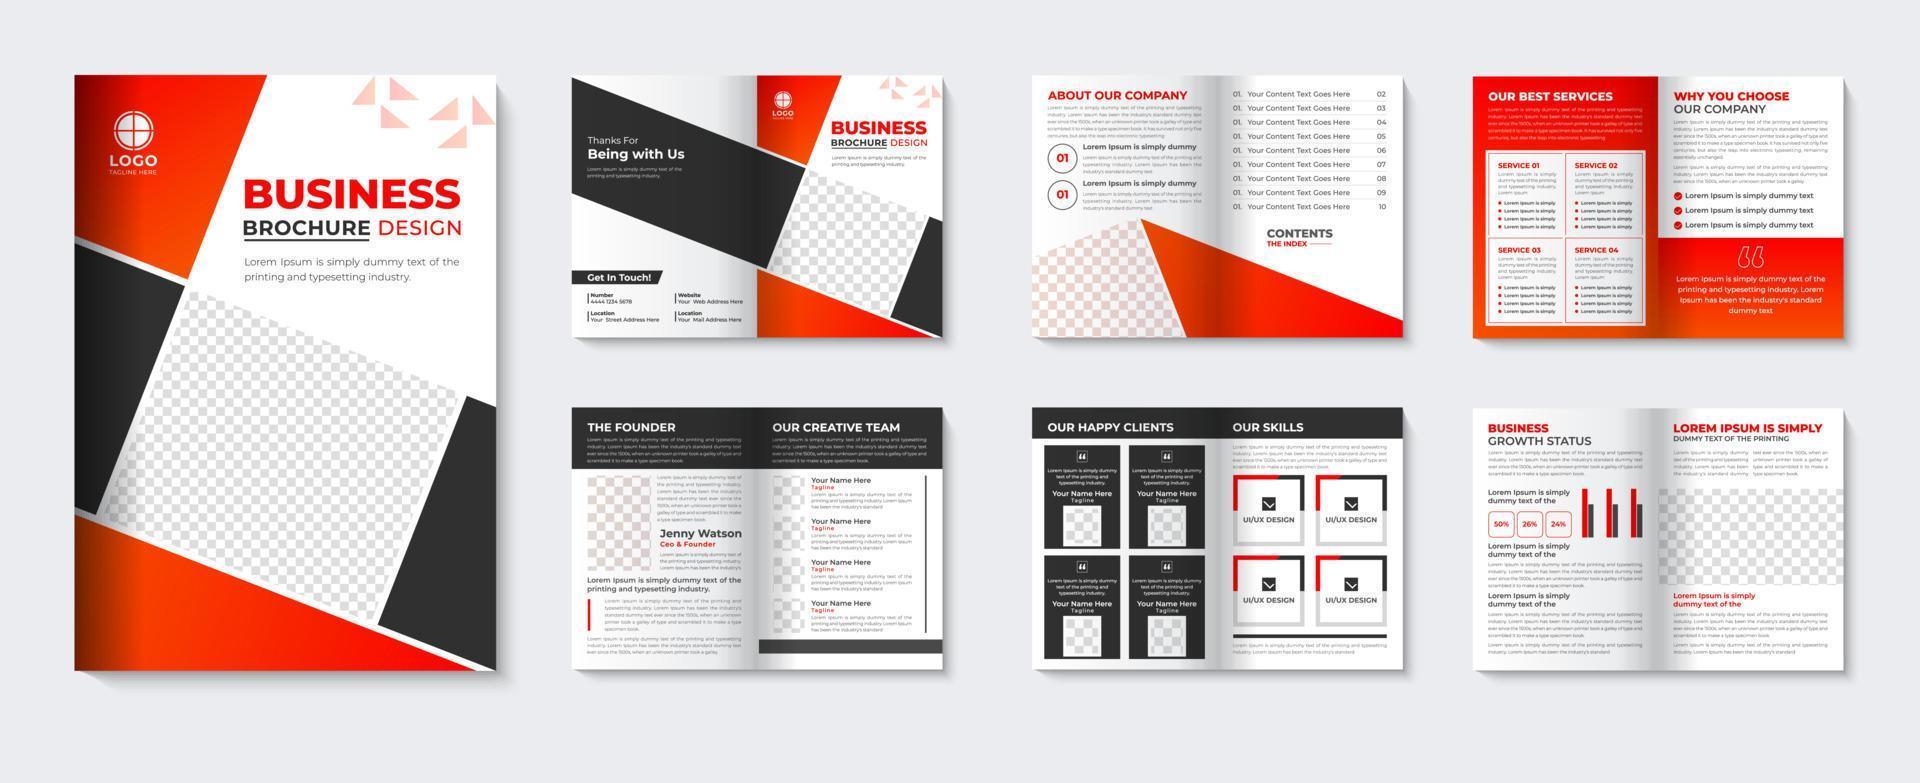 modelo de brochura corporativa e livreto minimalista perfil da empresa capa vermelha design de folheto para agência de negócios pro download vetor